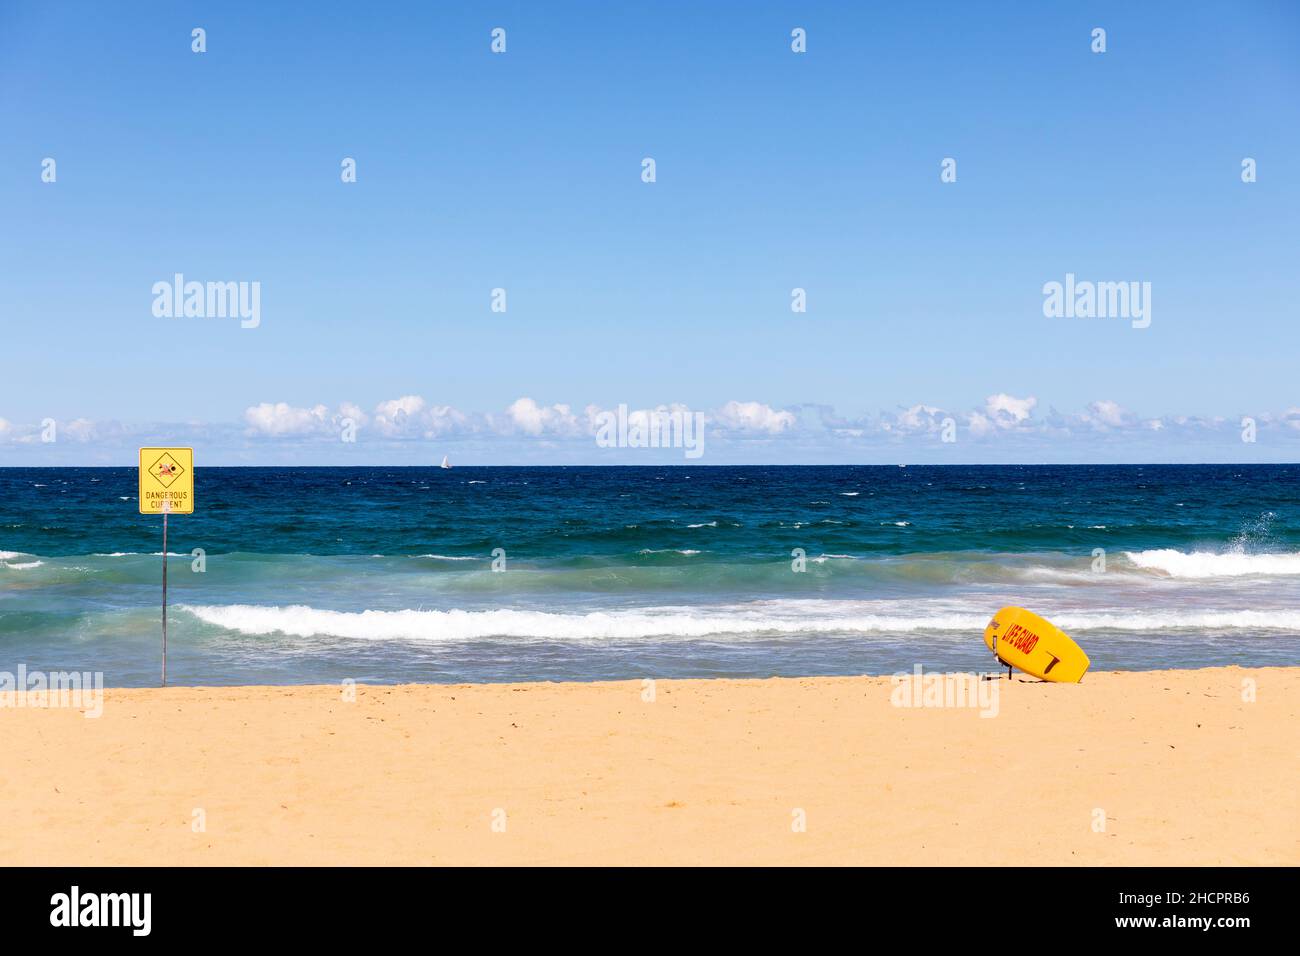 Gefahr am Palm Beach in Sydney, Schild weist auf gefährliche Strömung hin und halten Sie sich aus dem Wasser, Sydney, NSW, Australien Stockfoto